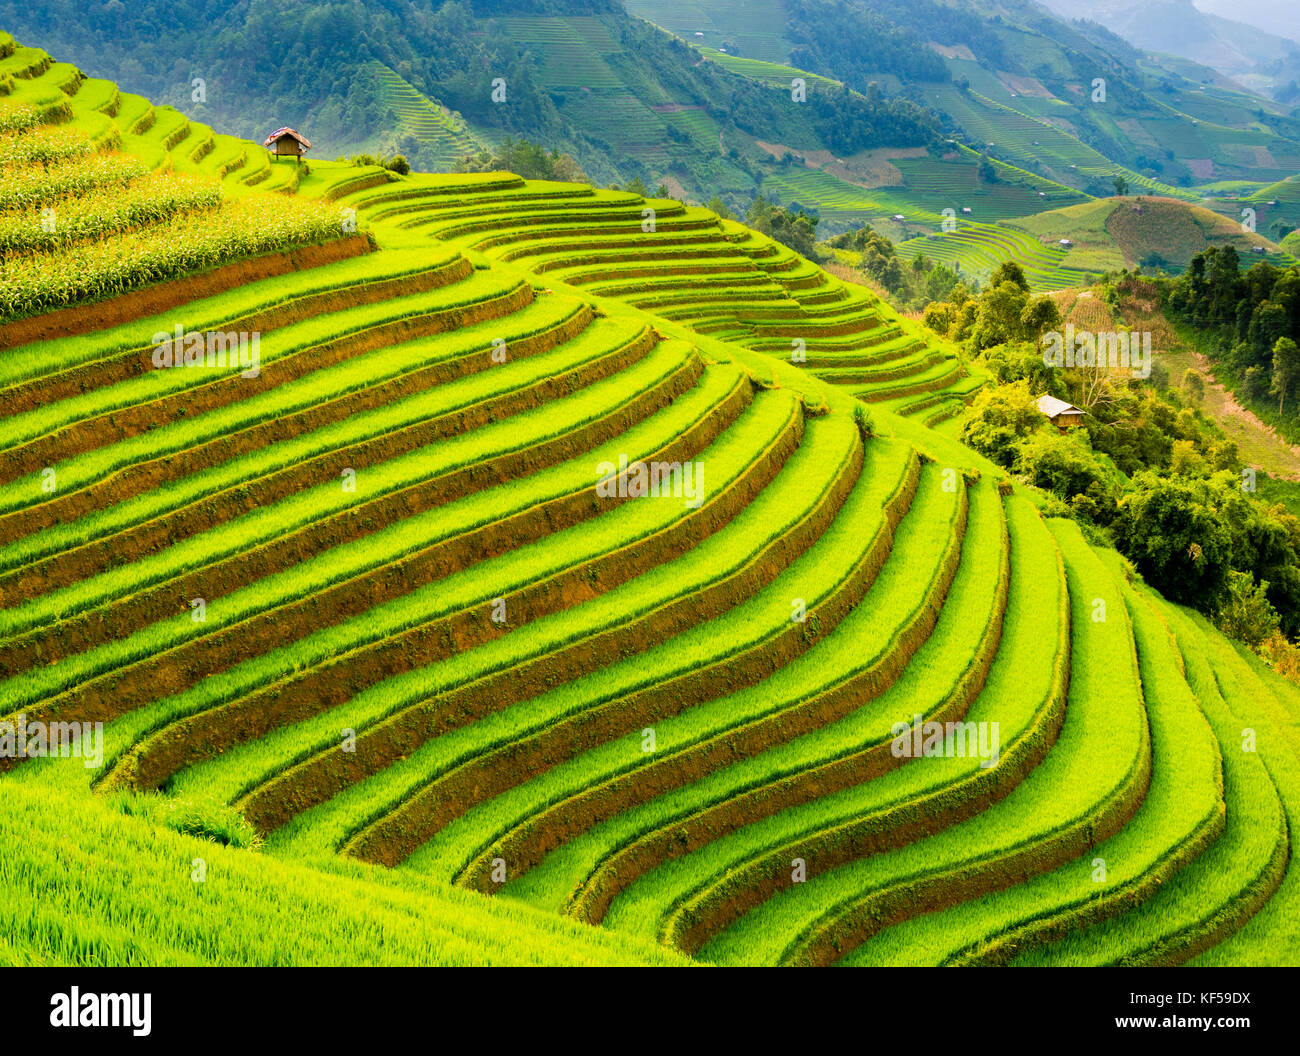 Champ de riz en terrasses dans les montagnes de mu cang chai, Yen Bai, province du nord du Vietnam Banque D'Images